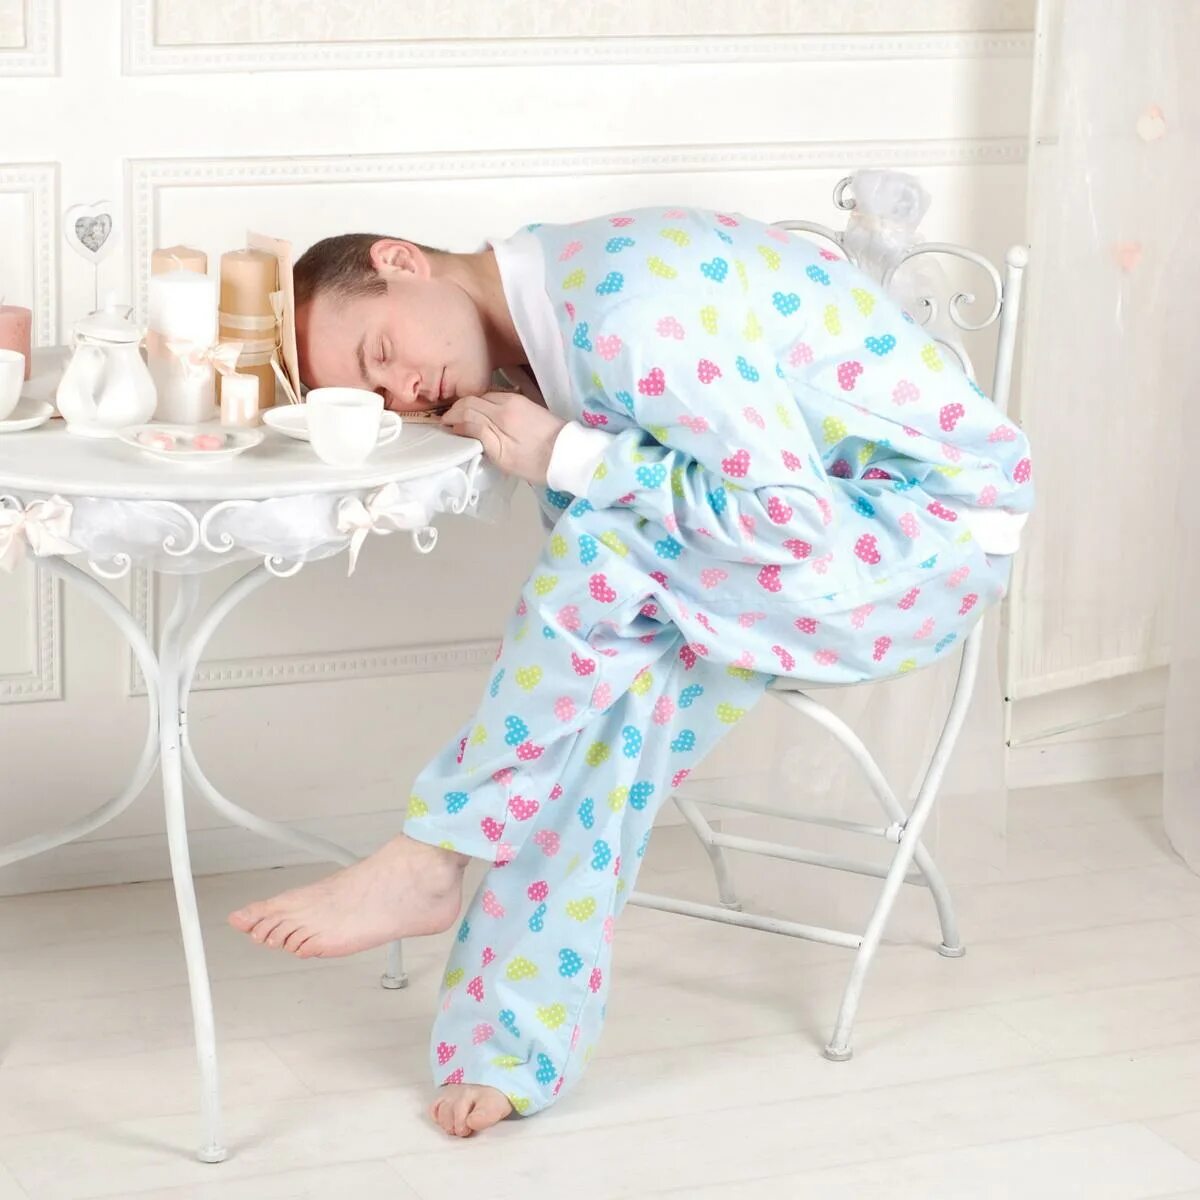 Прийти в пижаме. Пижама для сна. Пижама смешная. Фотосессия в пижаме. Пижама для девочки.